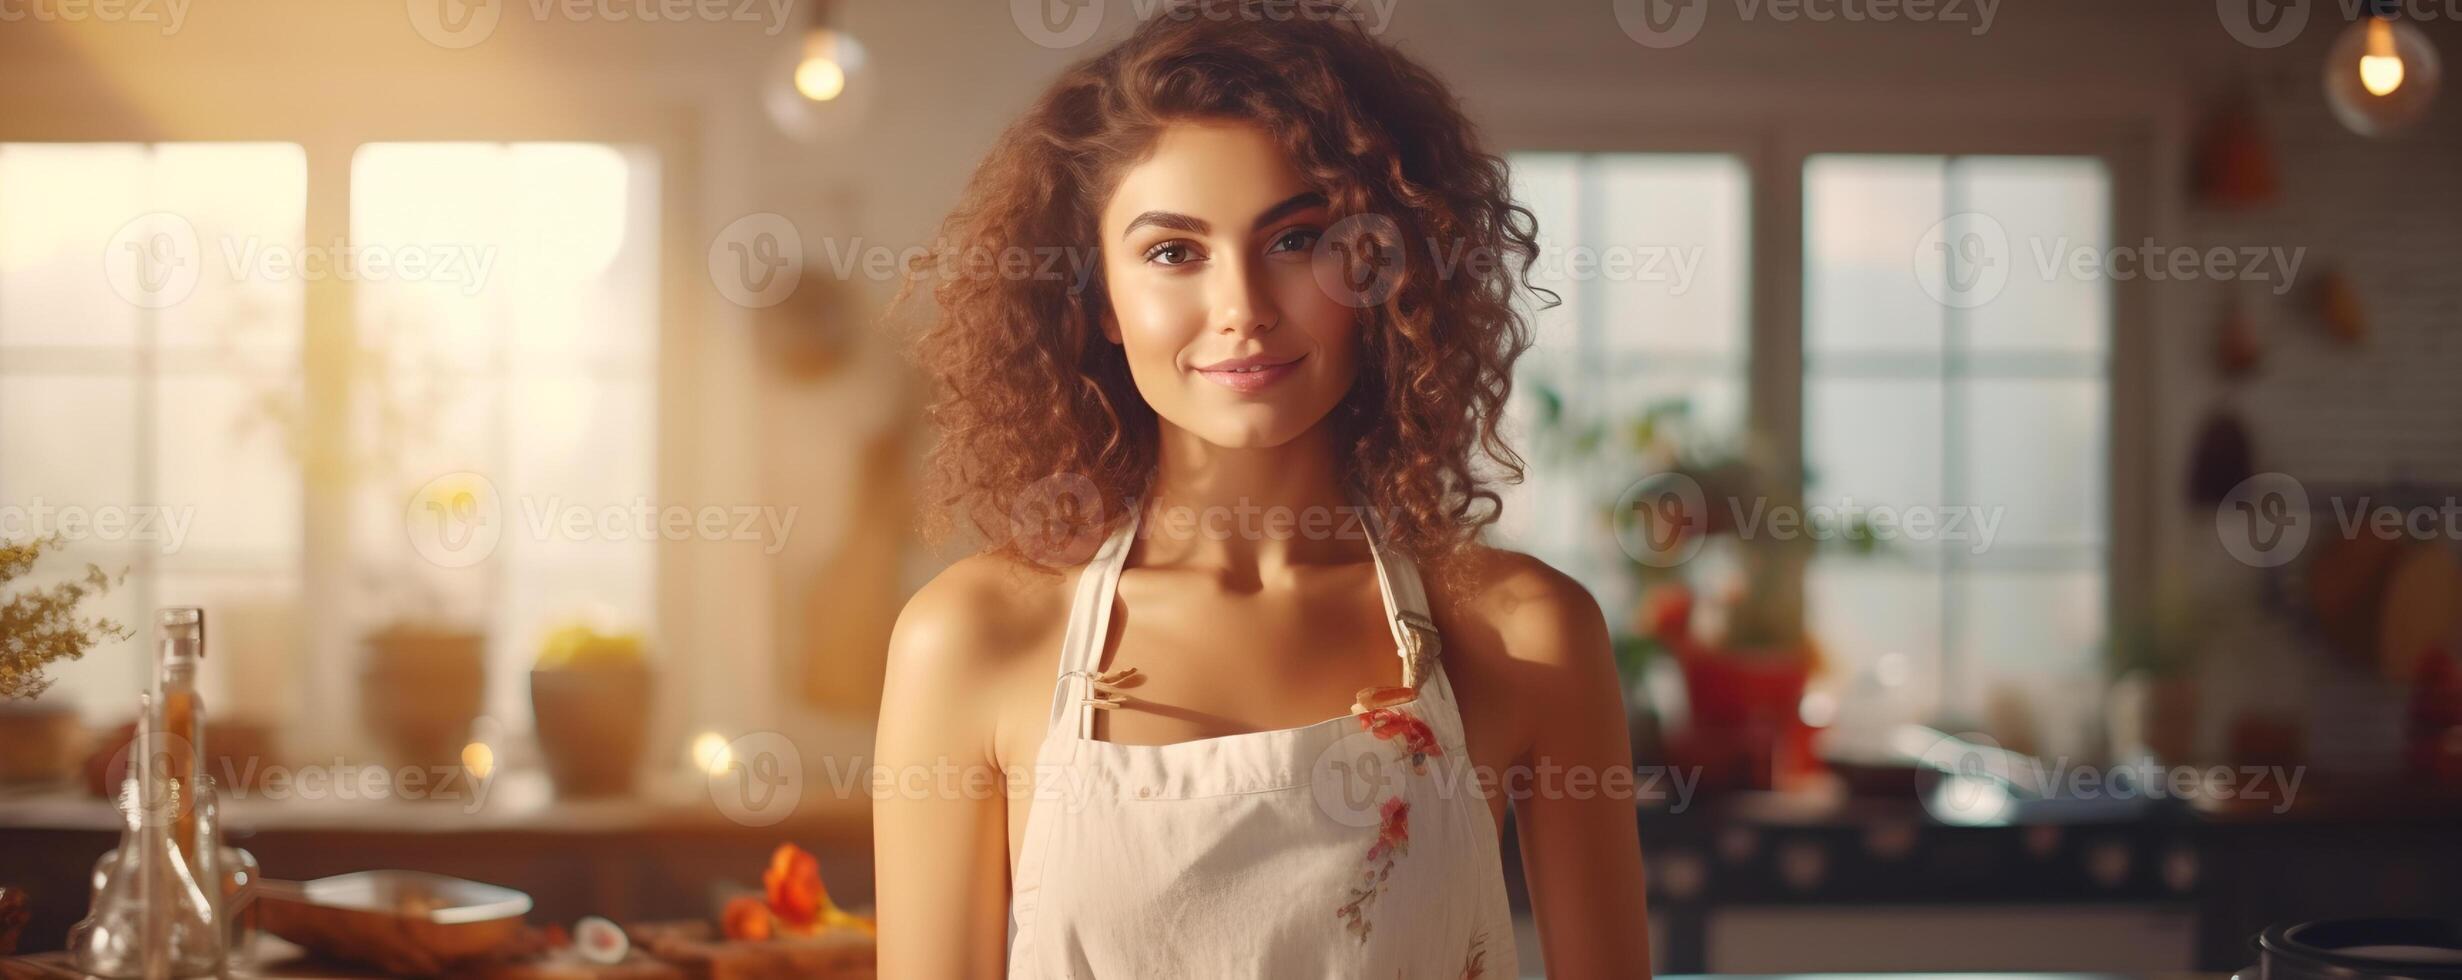 porträtt av en mode kvinna i de kök, lockigt hårstrån av en kvinna, porträtt av en Söt ung mode modell, Söt mode flicka baner foto